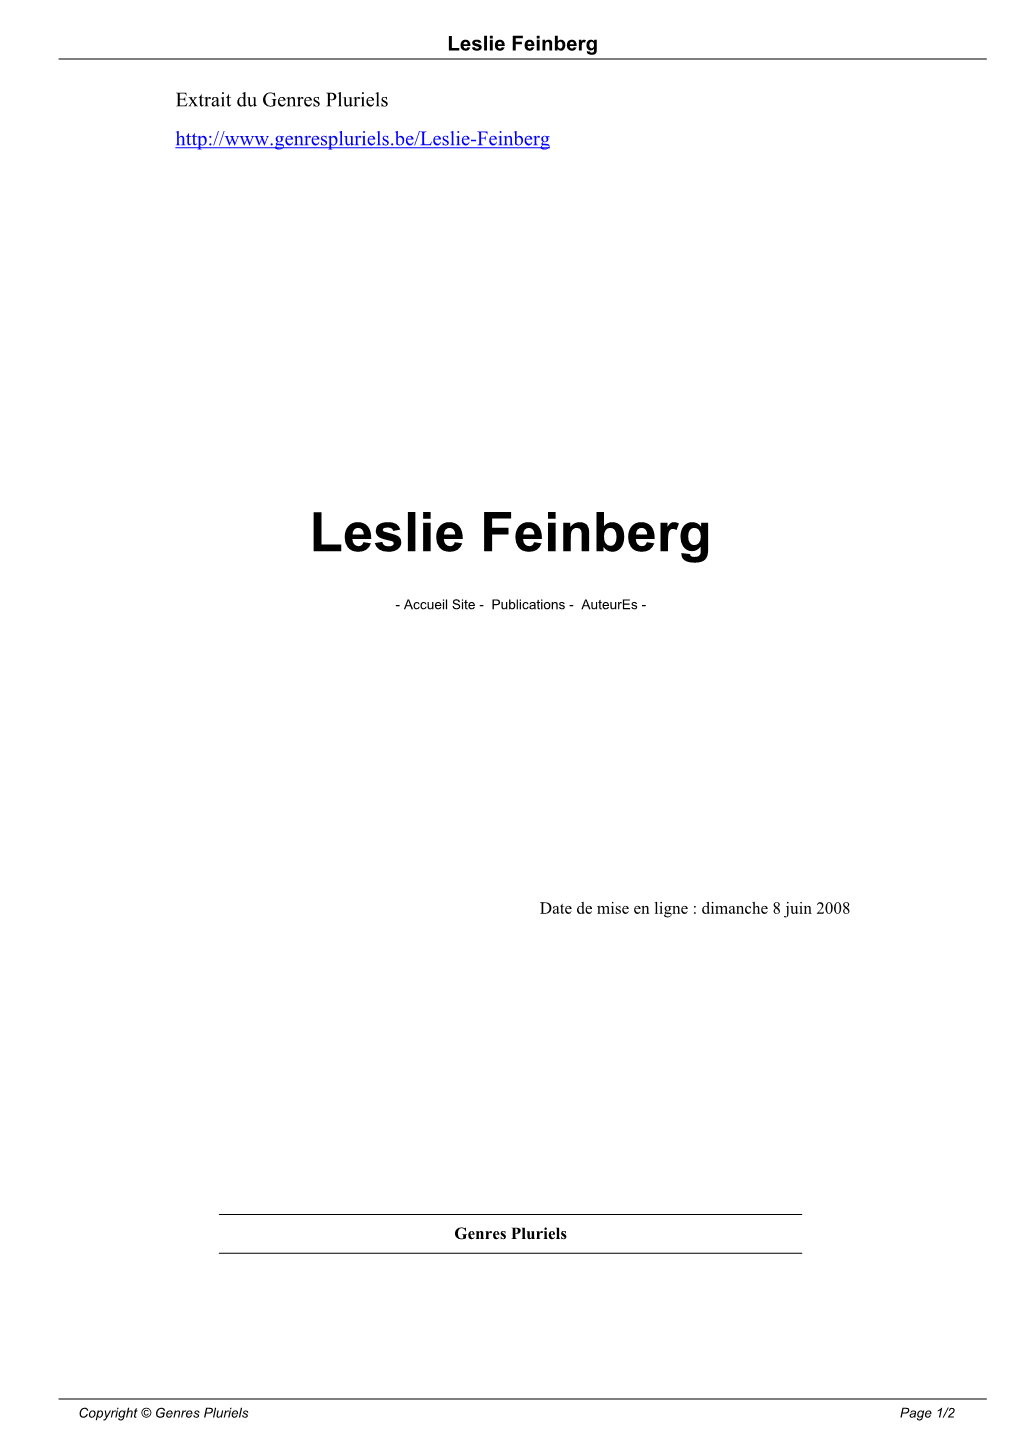 Leslie Feinberg